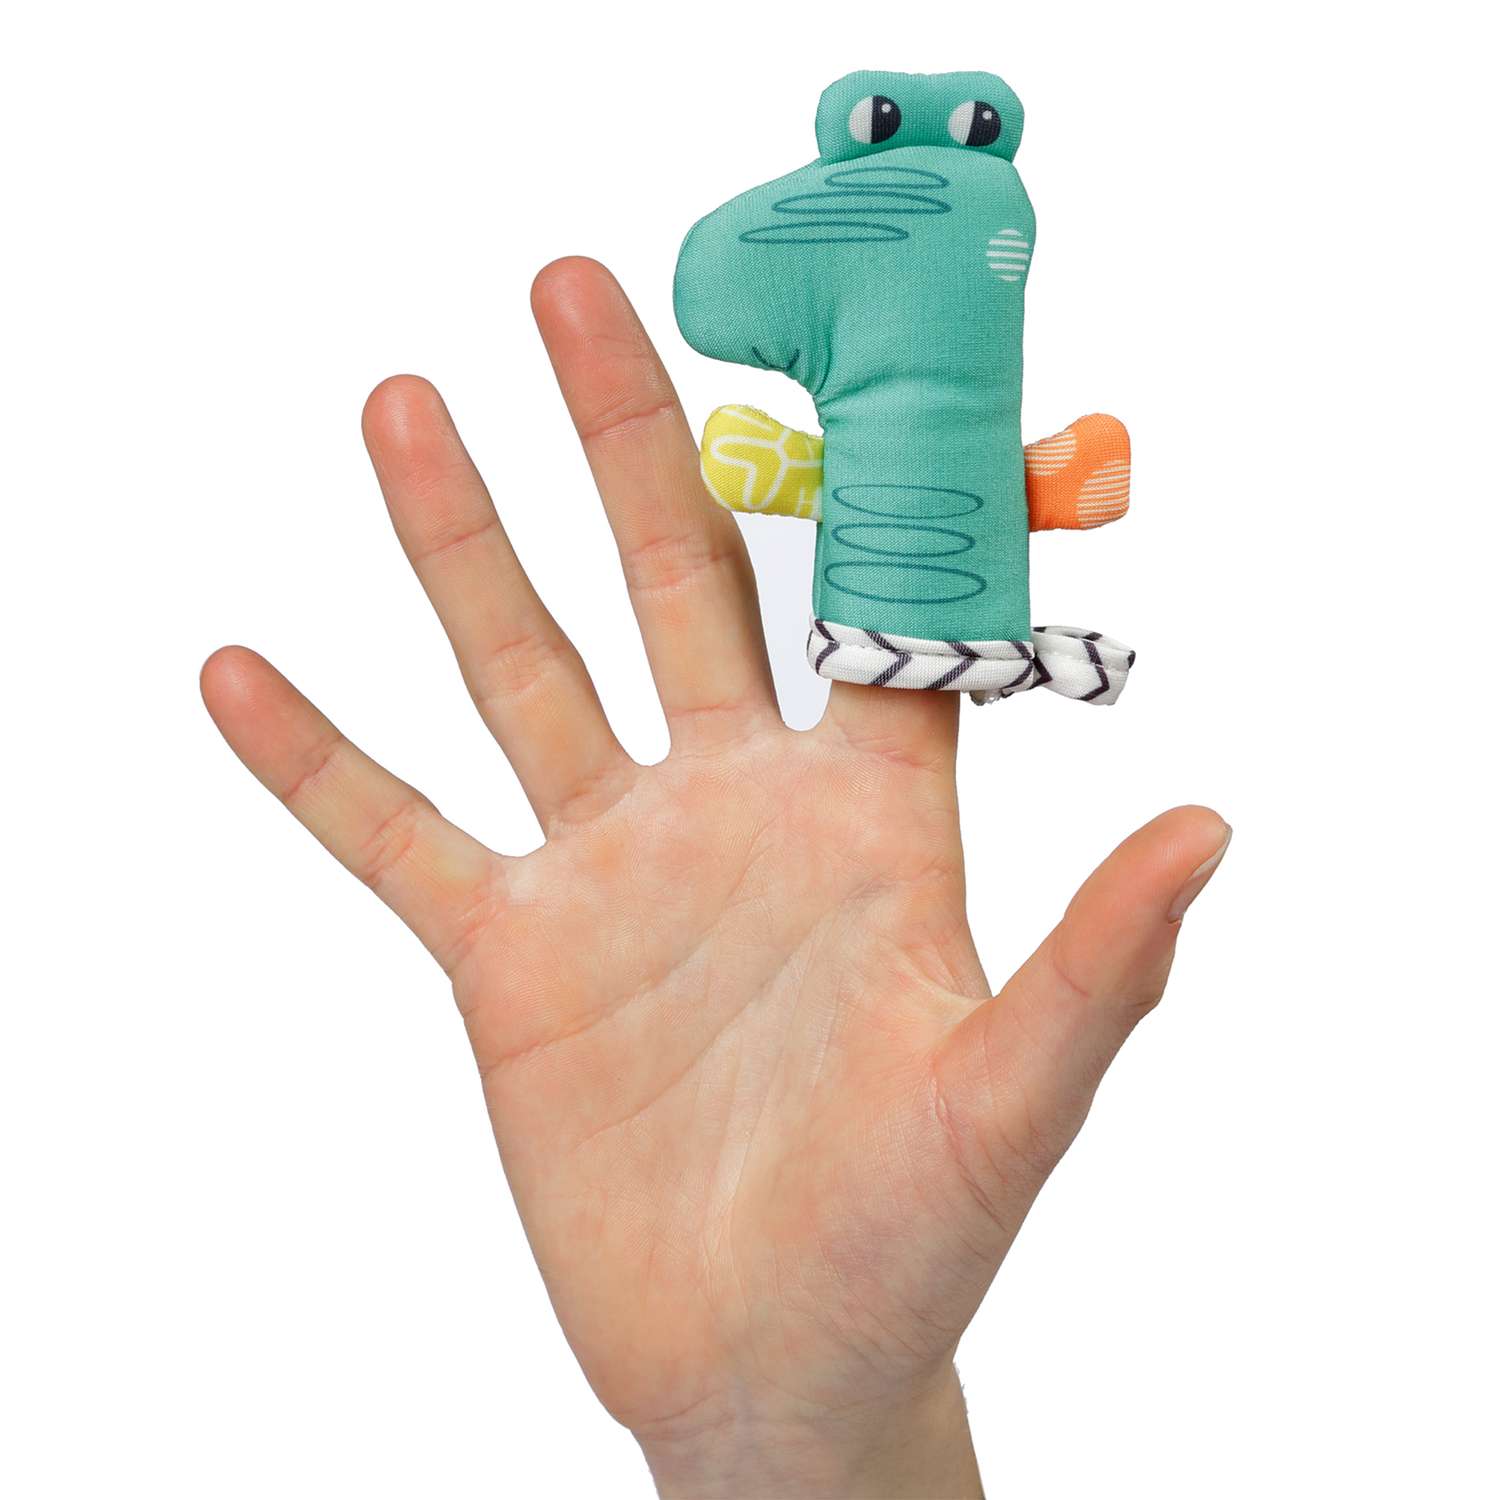 Игрушка для ванны FEHN Лодка и пальчиковая игрушка Крокодил - фото 4